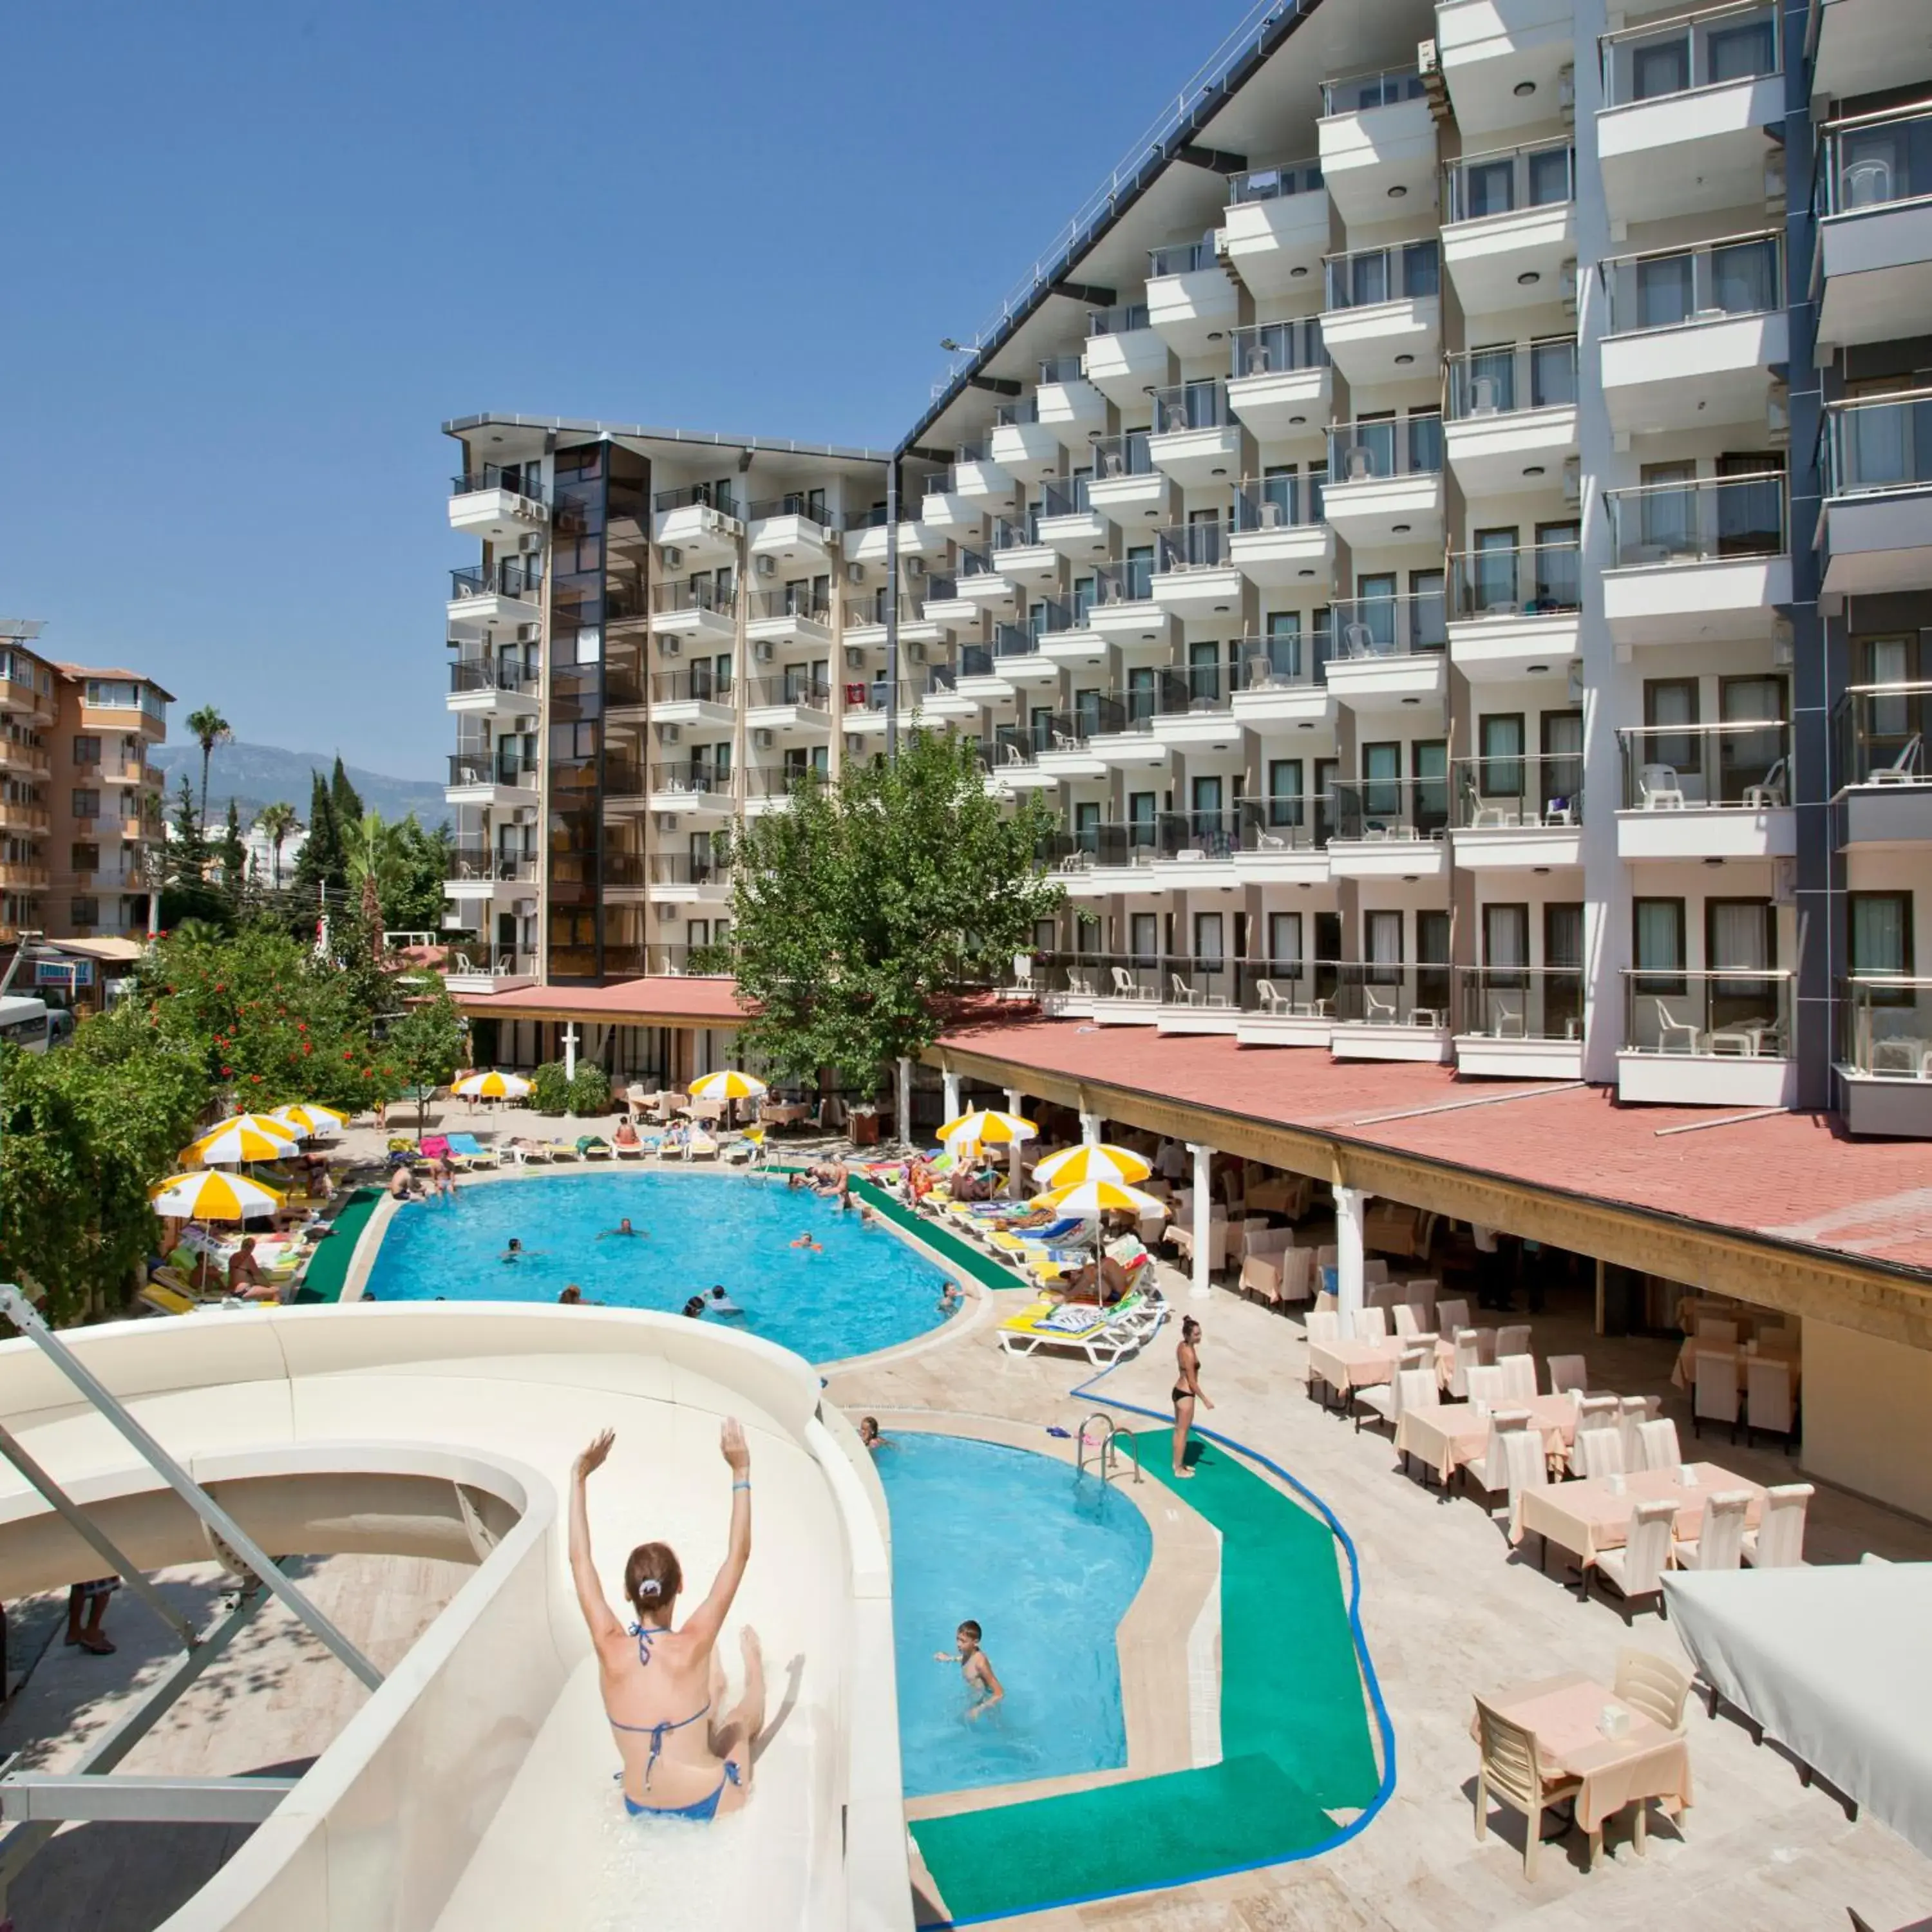 Facade/entrance, Pool View in Monte Carlo Hotel